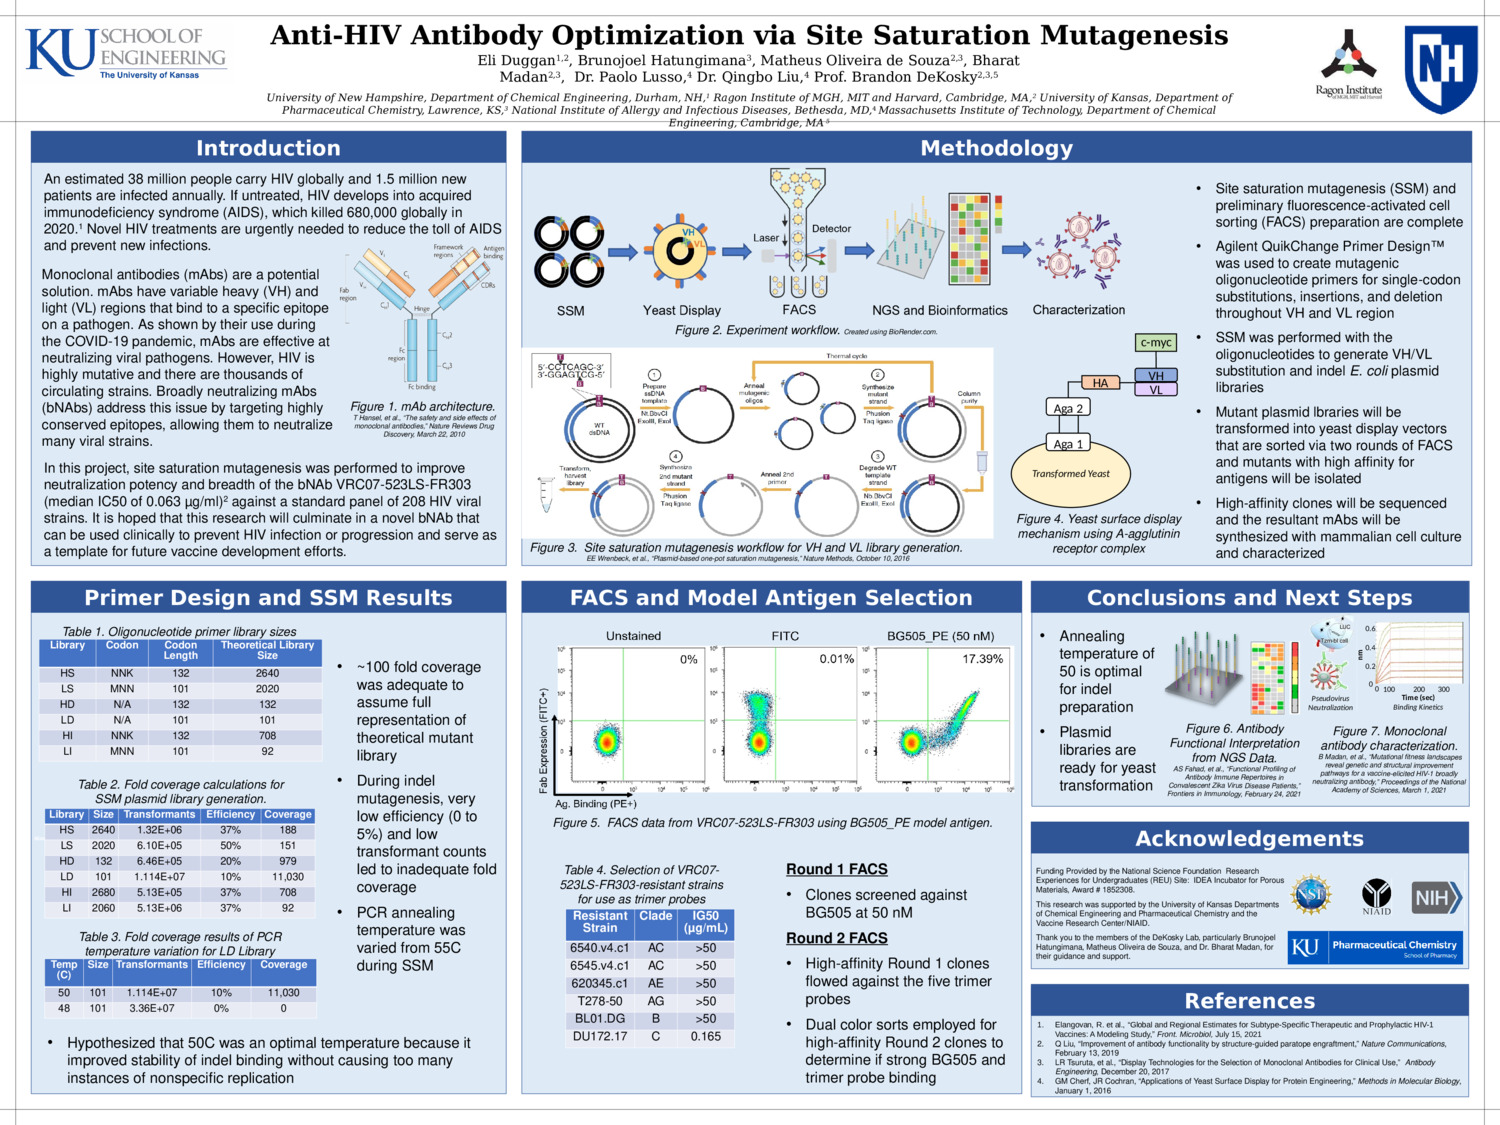 Anti-Hiv Antibody Optimization Via Site Saturation Mutagenesis by emd1085